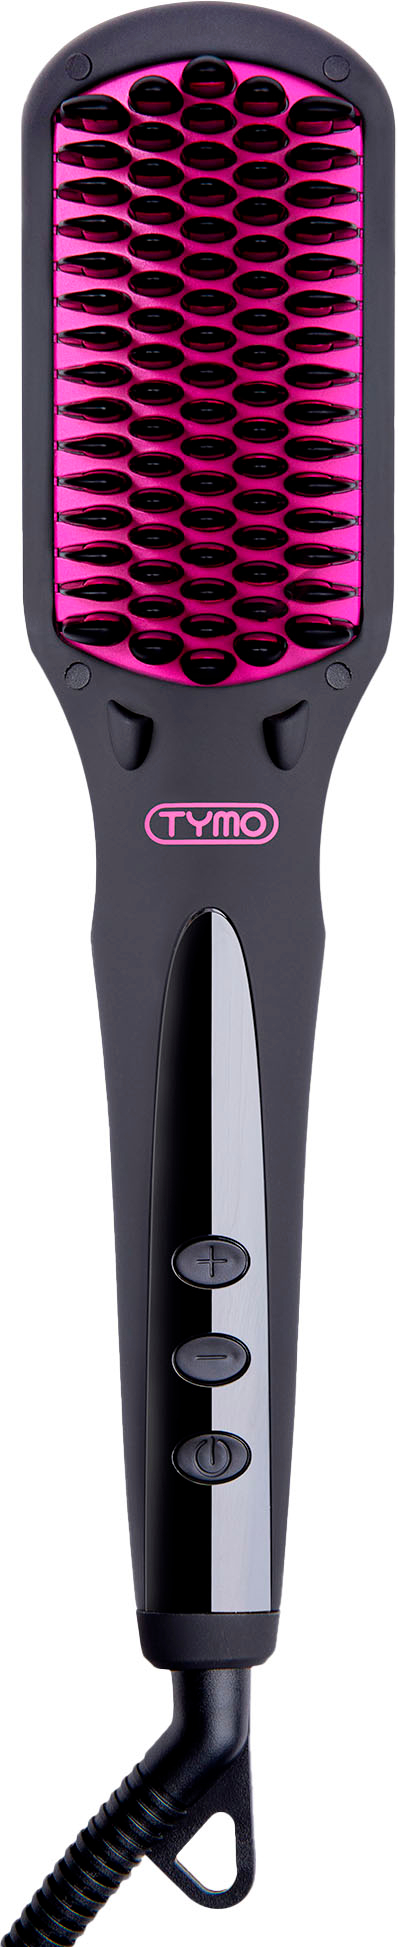 TYMO iONIC Hair Straightening Brush - Tymo Beauty